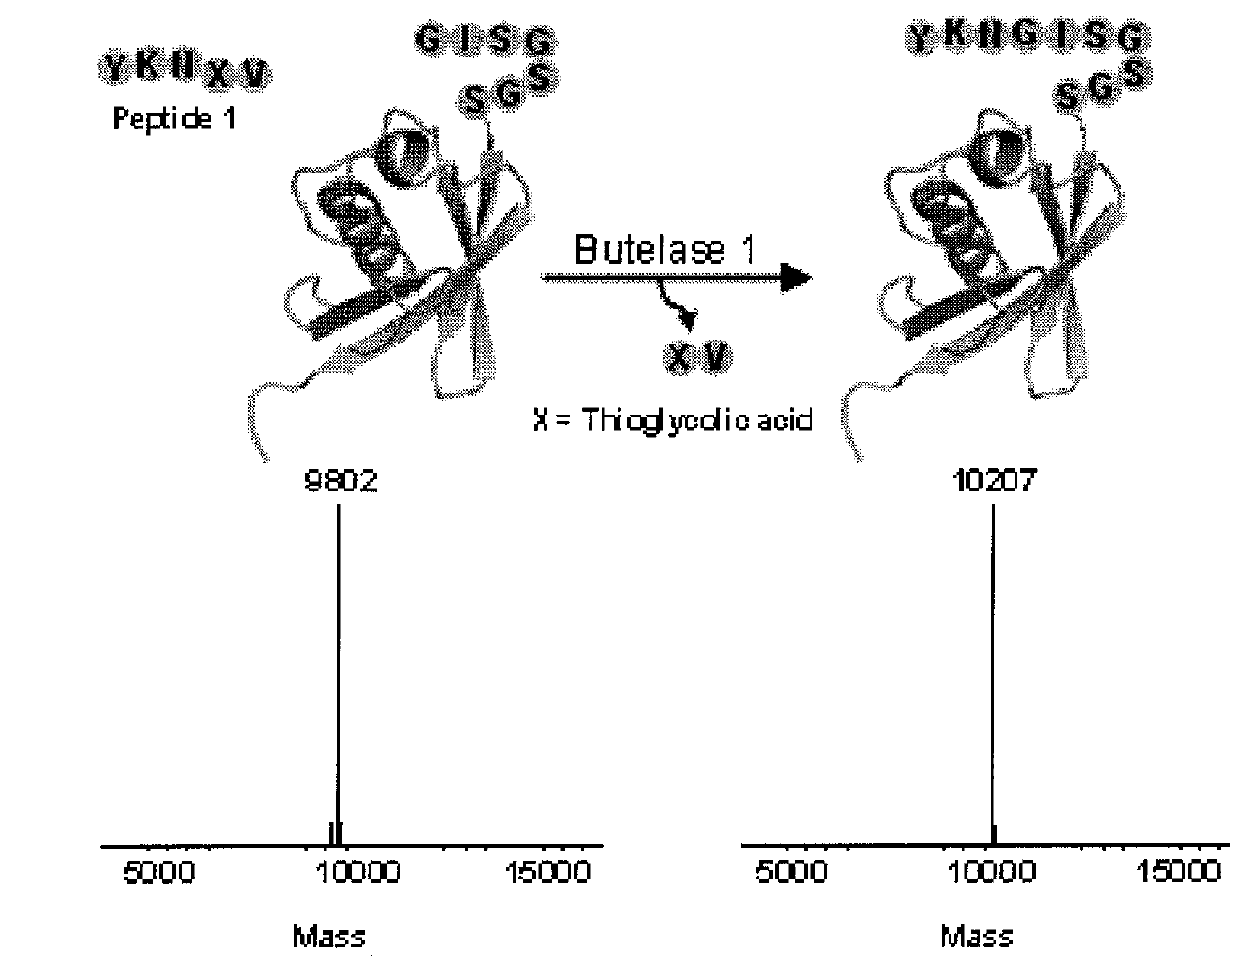 Butelase-mediated peptide ligation